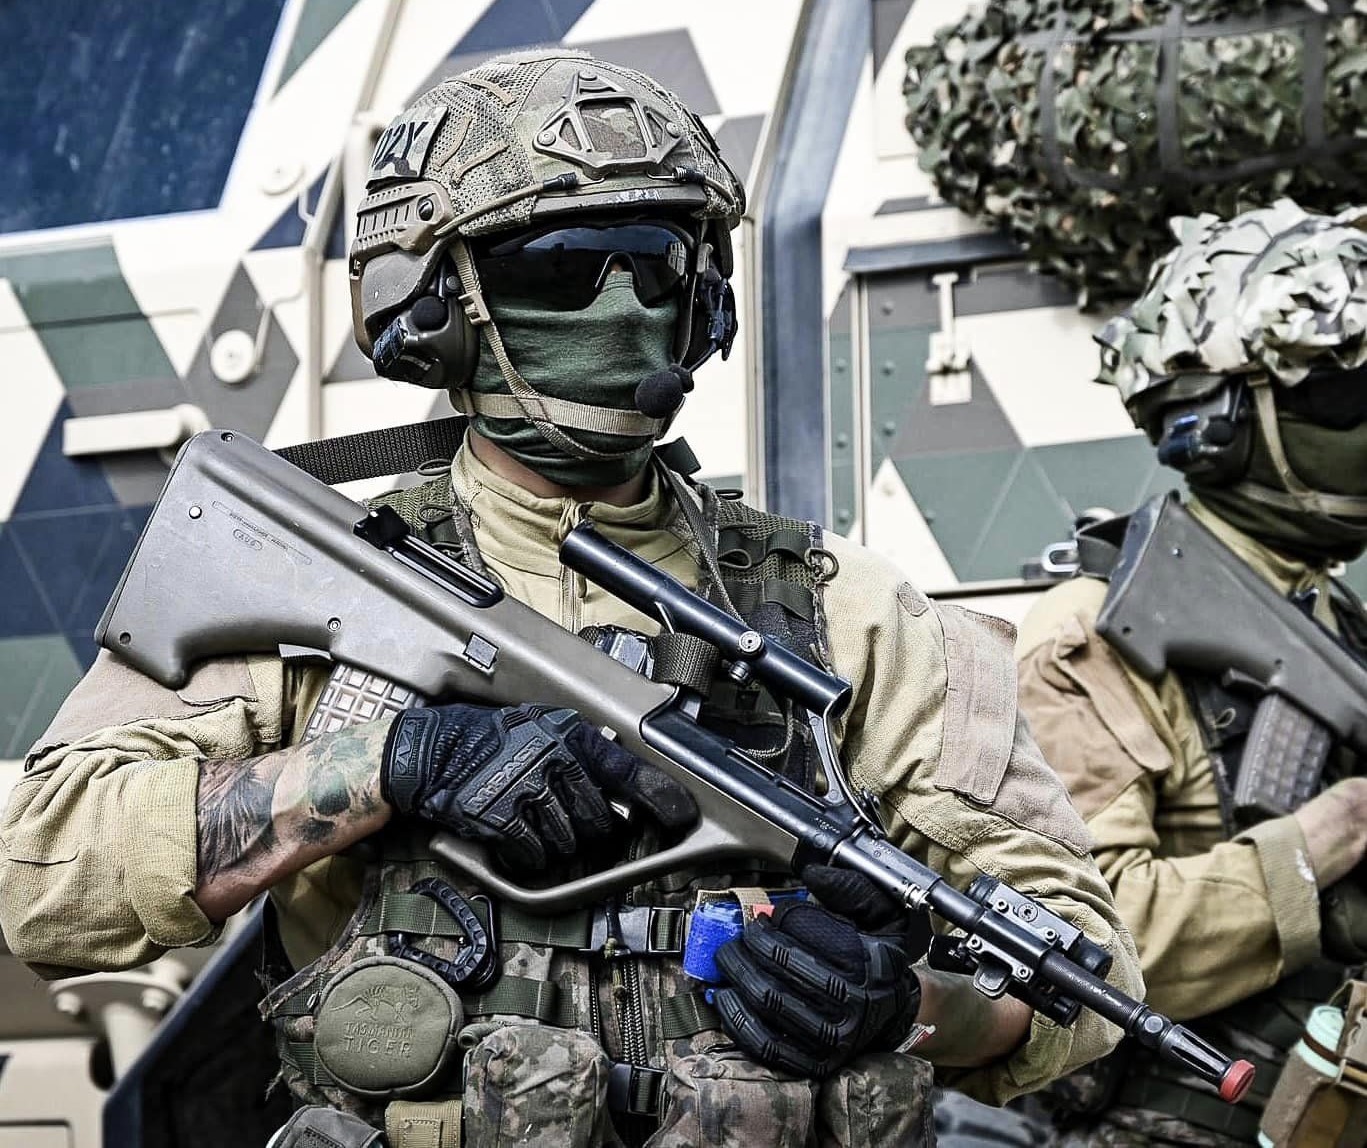 Geoană: A NATO fel van vértezve a lehetséges fenyegetések ellen